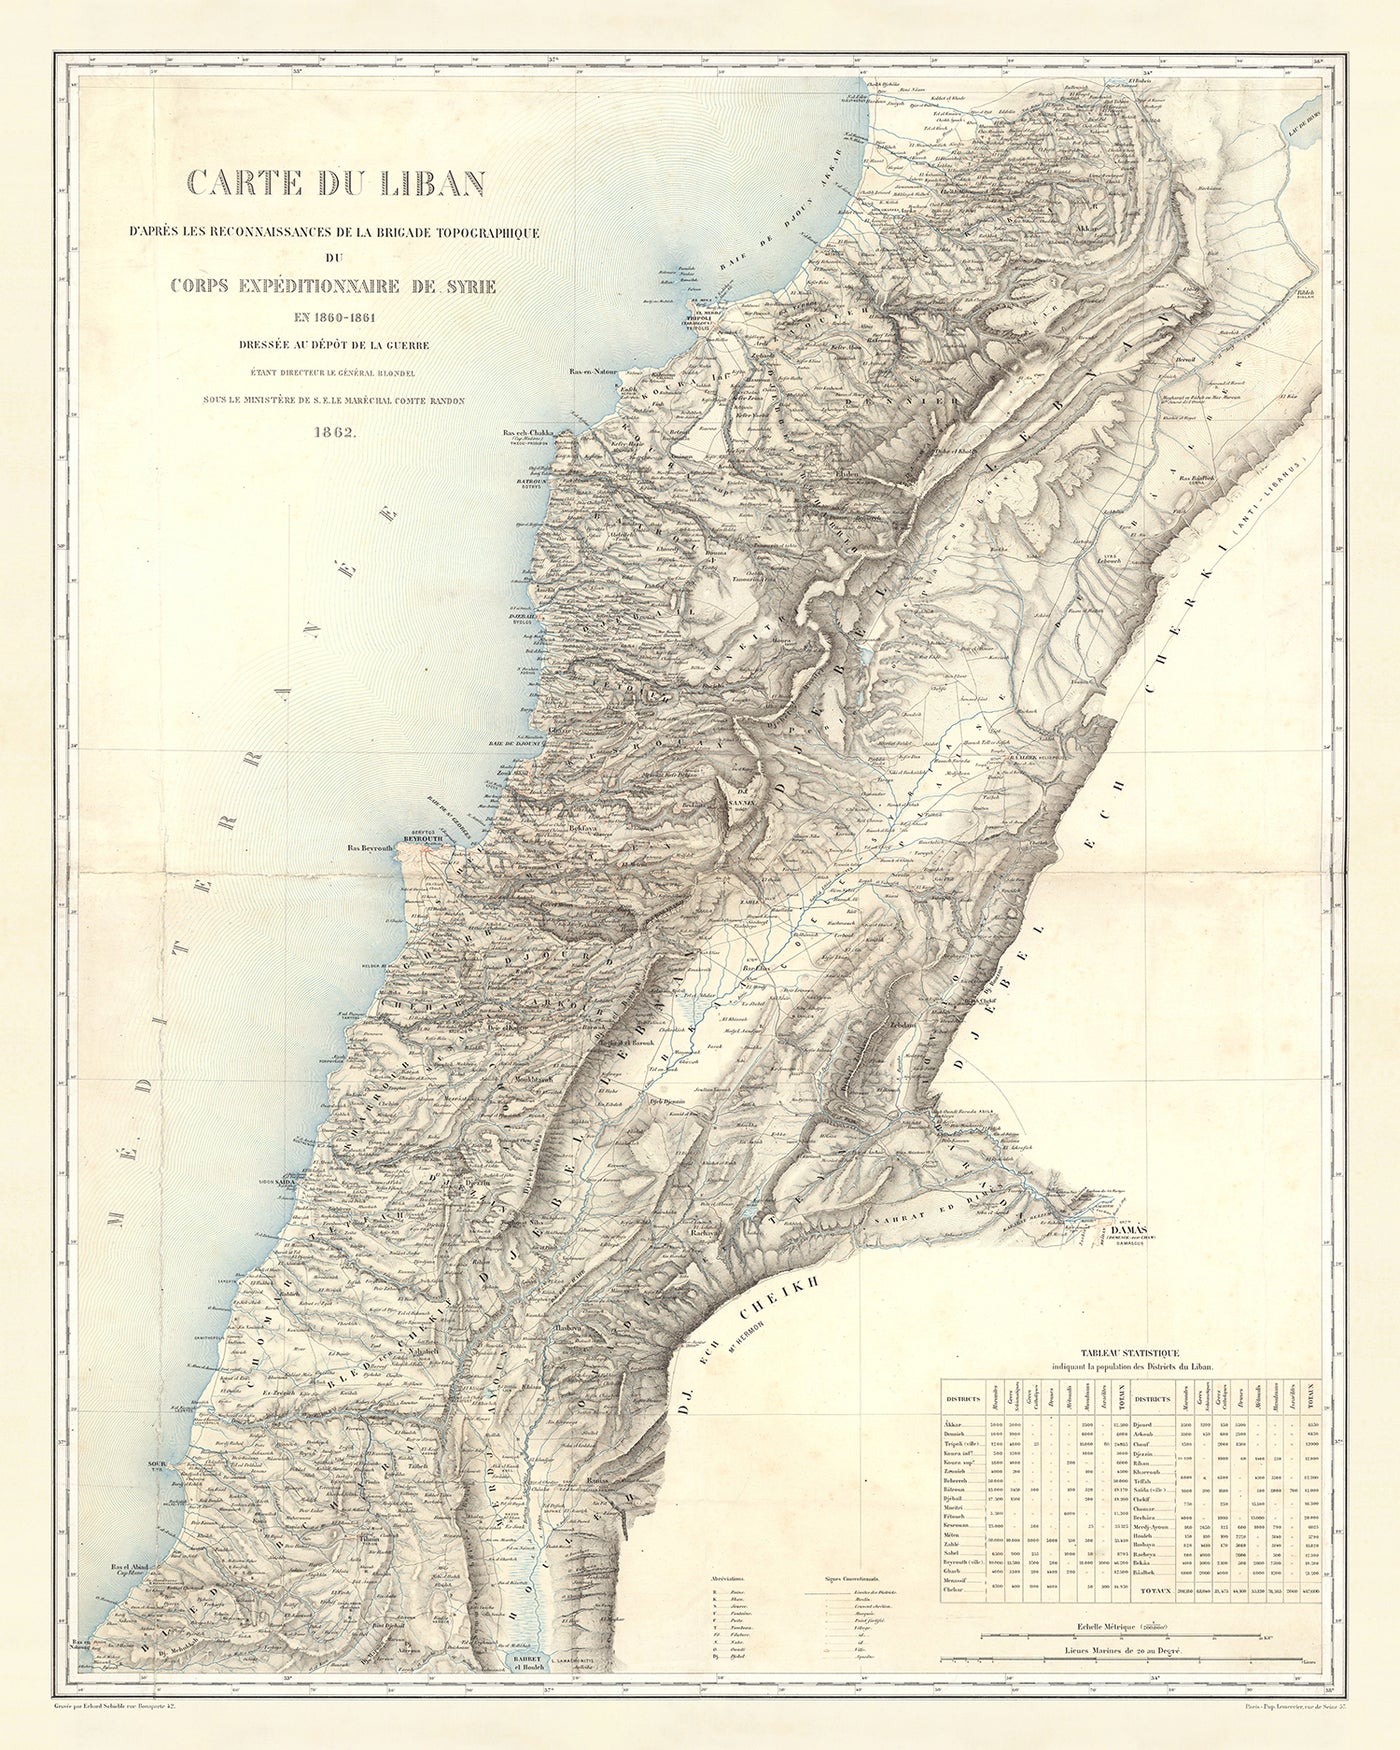 Ancienne carte du Liban par Dépôt De La Guerre, 1862 : Beyrouth, Tripoli, Sidon, Tyr, Byblos